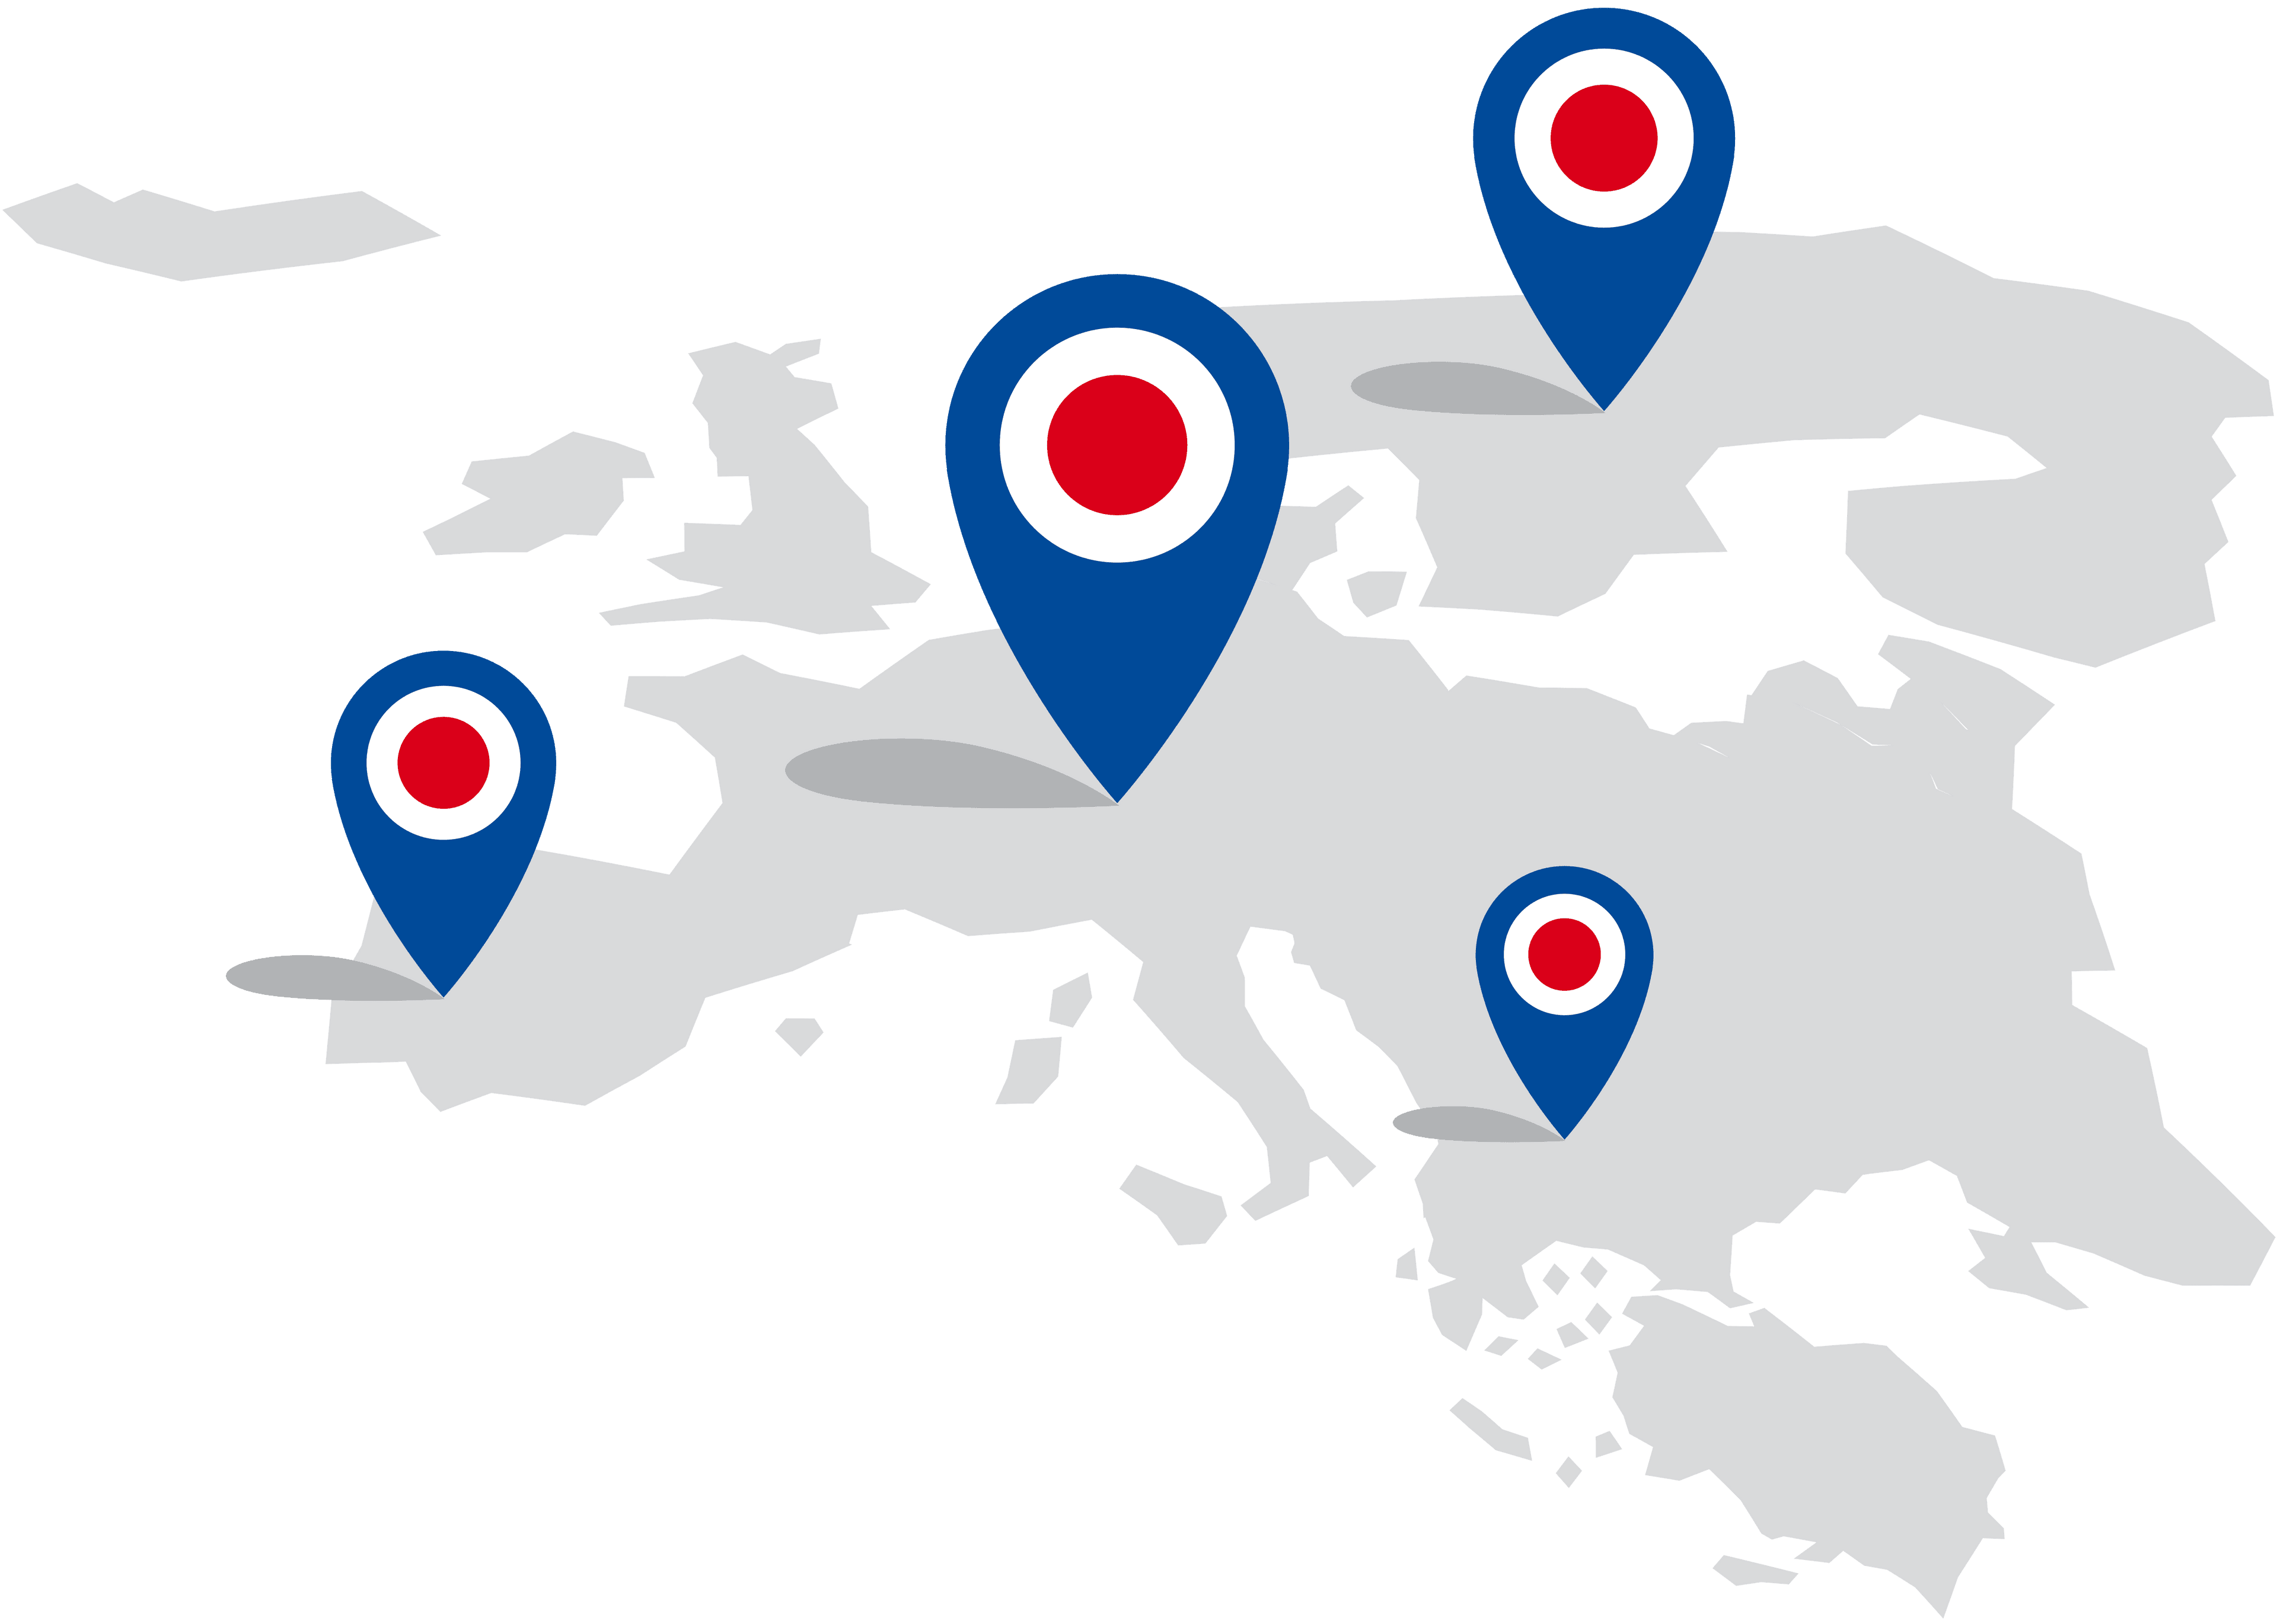 Mapa Europy obrazująca międzynarodowy charakter marki